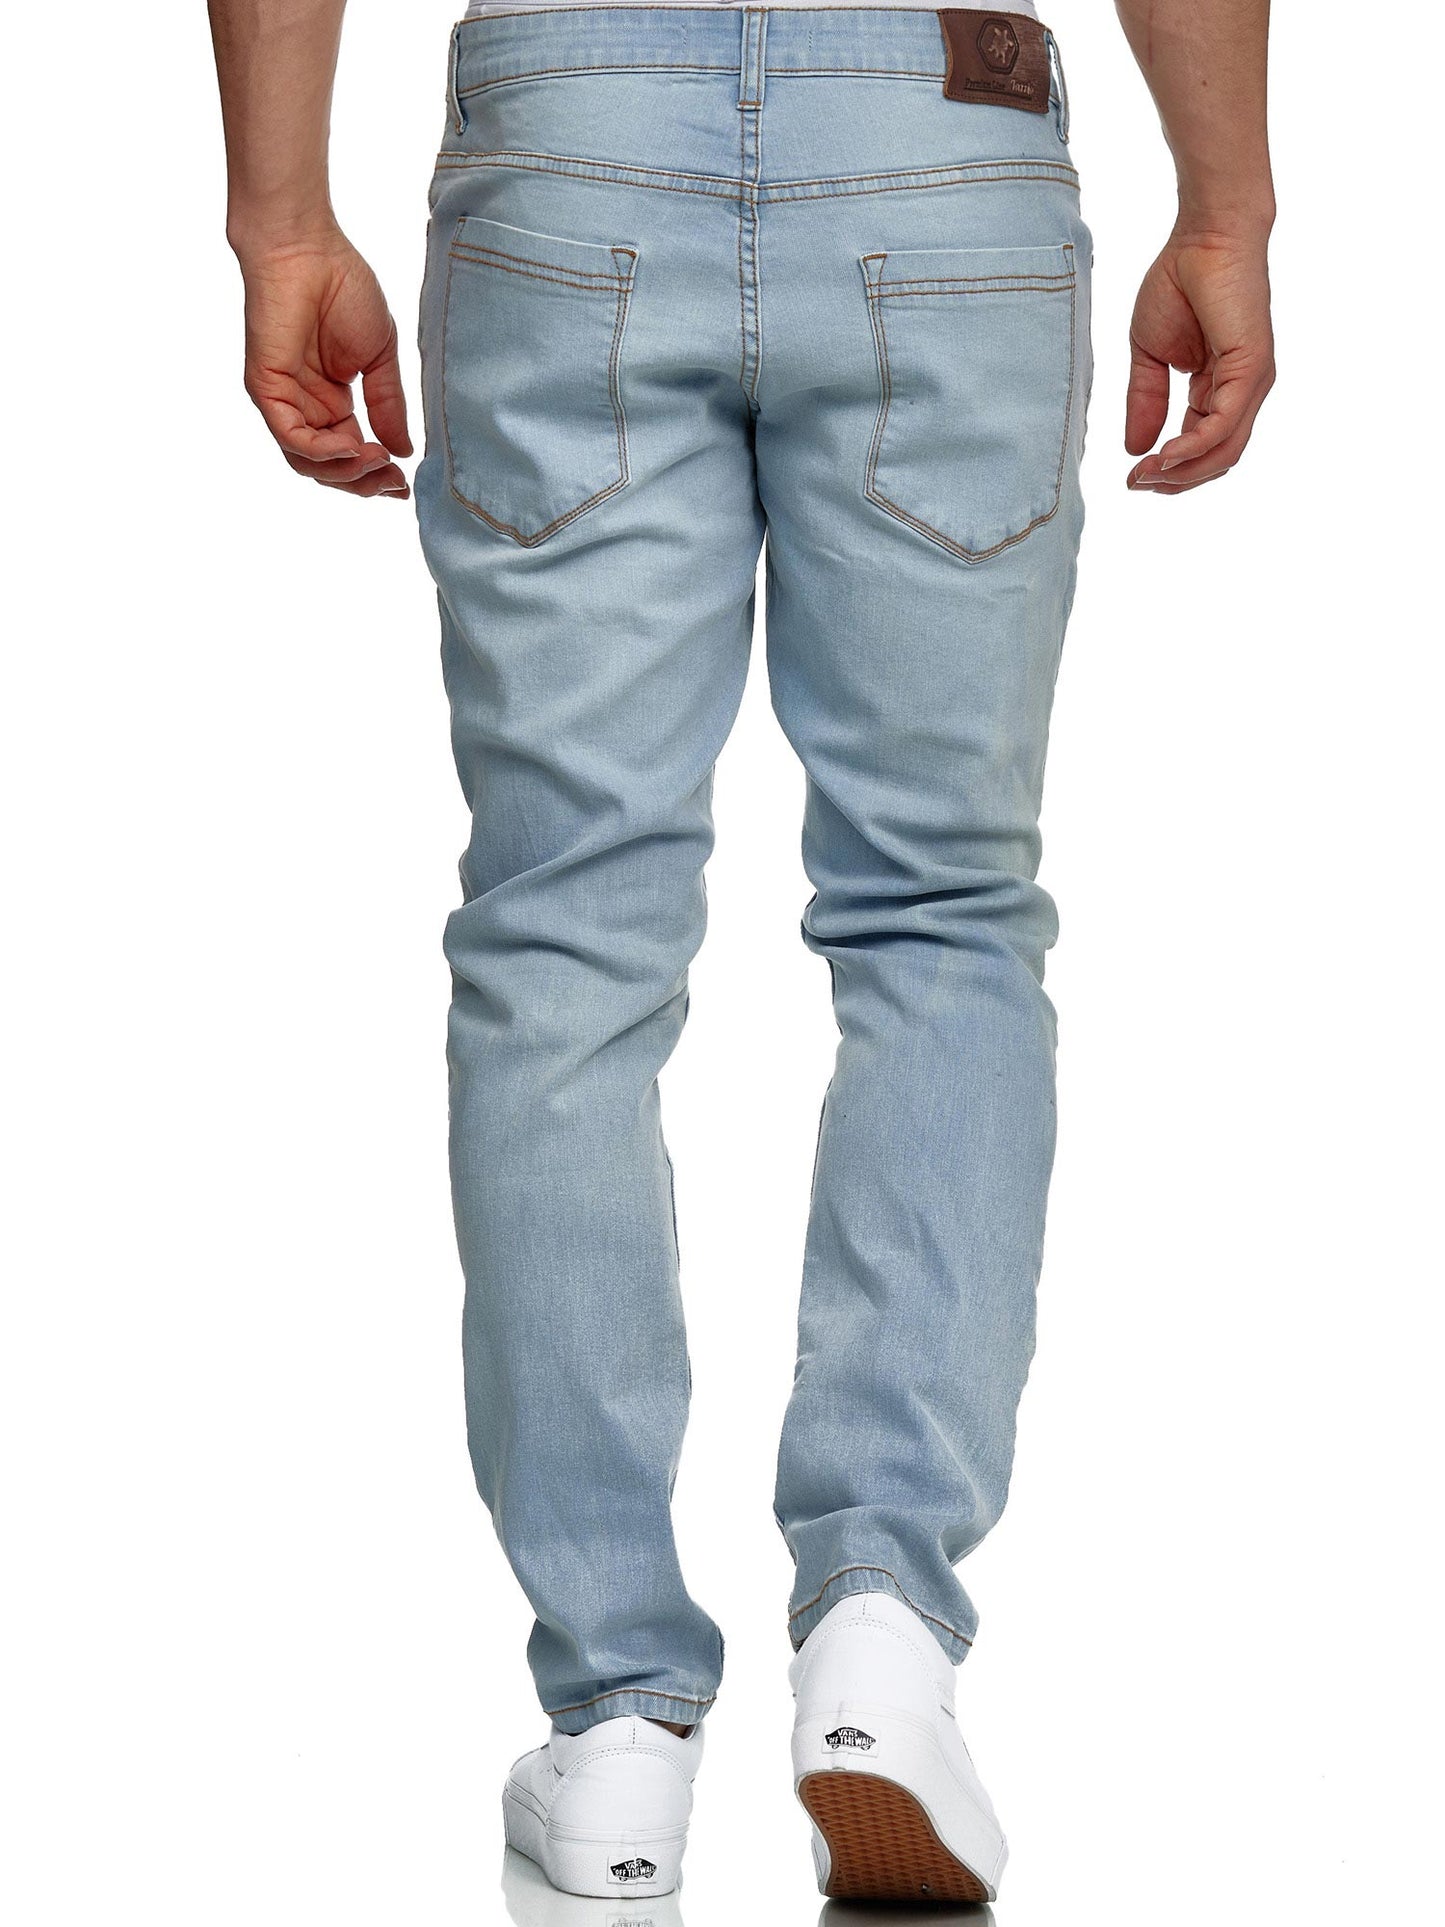 Tazzio Herren Jeans Slim Fit 16533 Hellblau